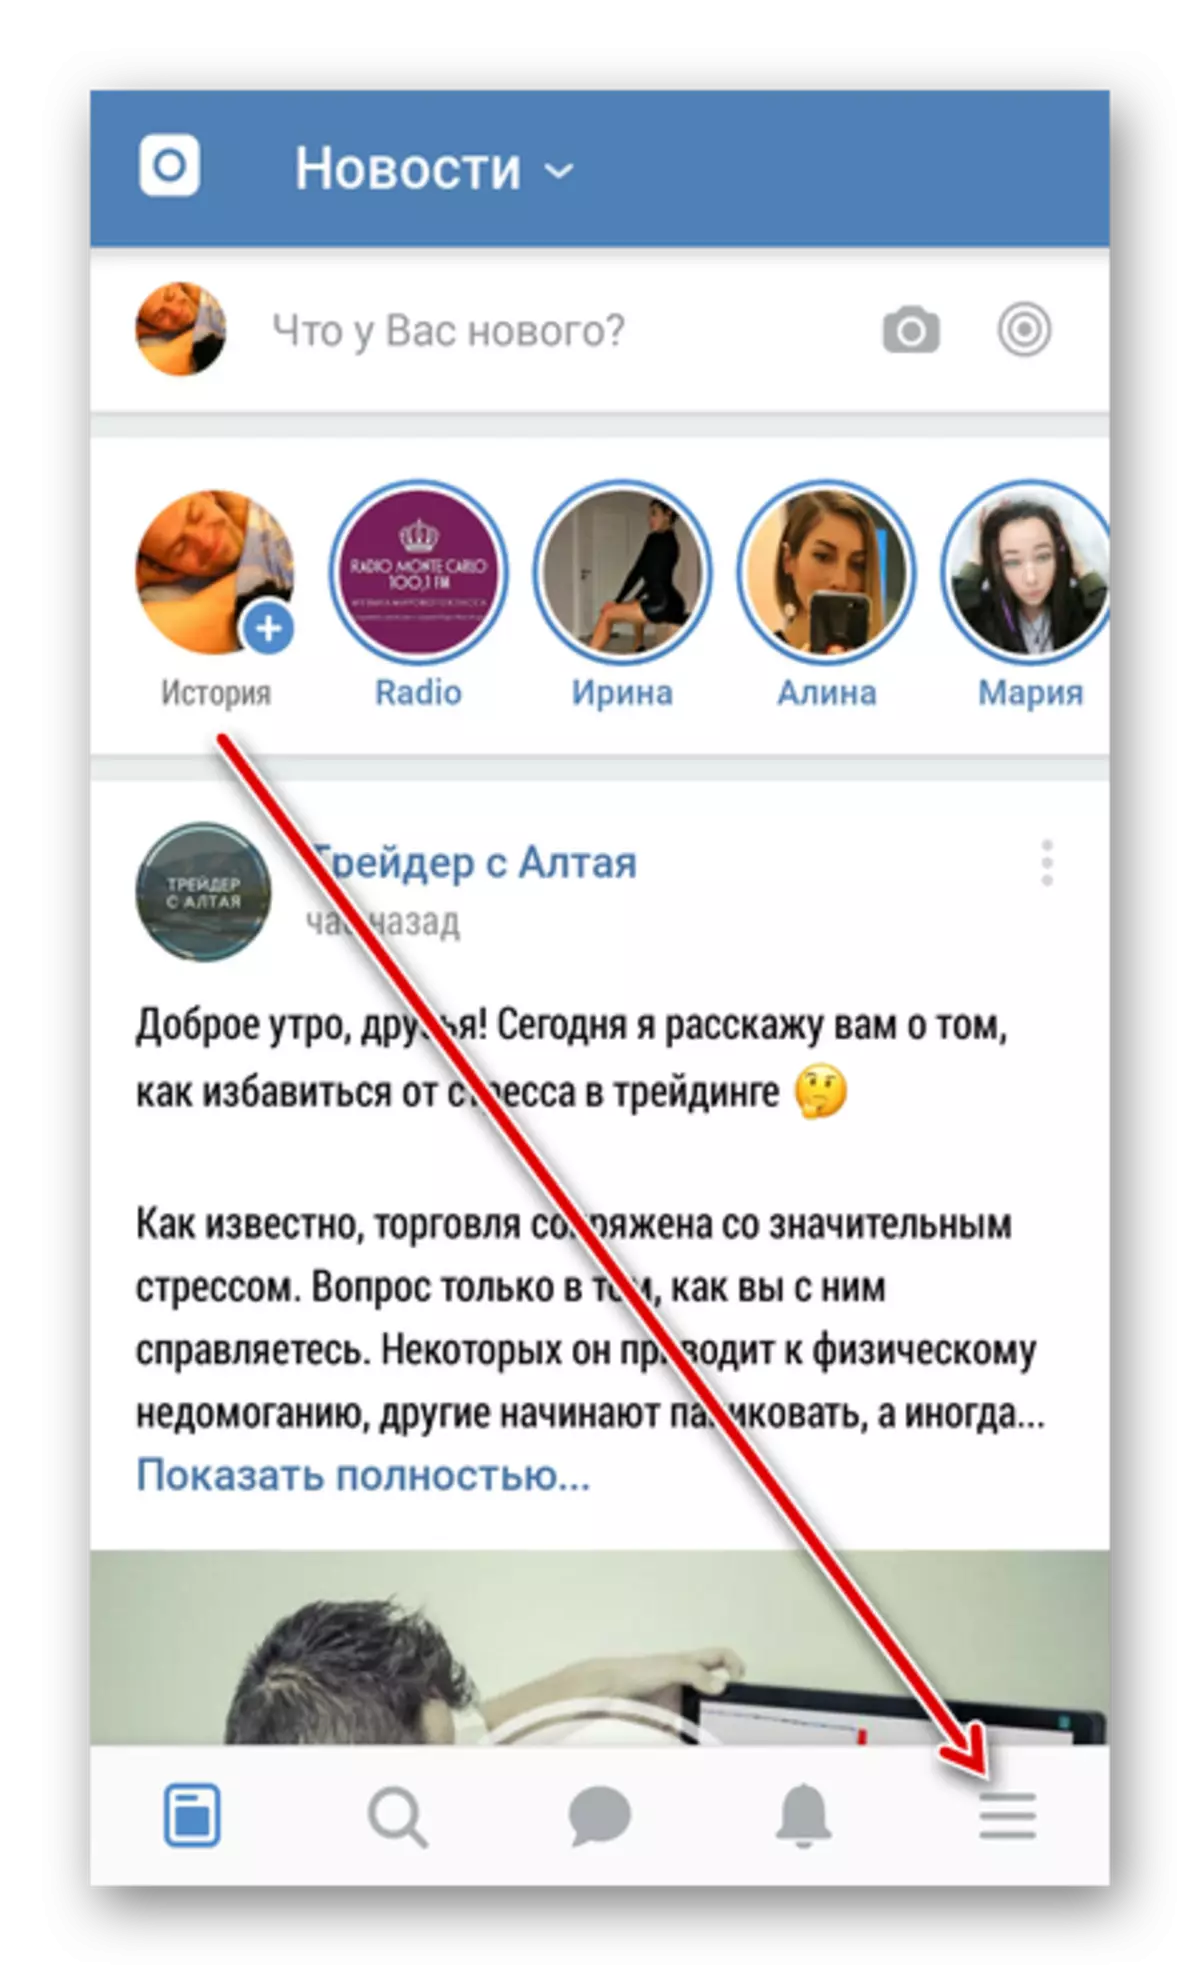 Уваход у меню ў дадатку Вконтакте